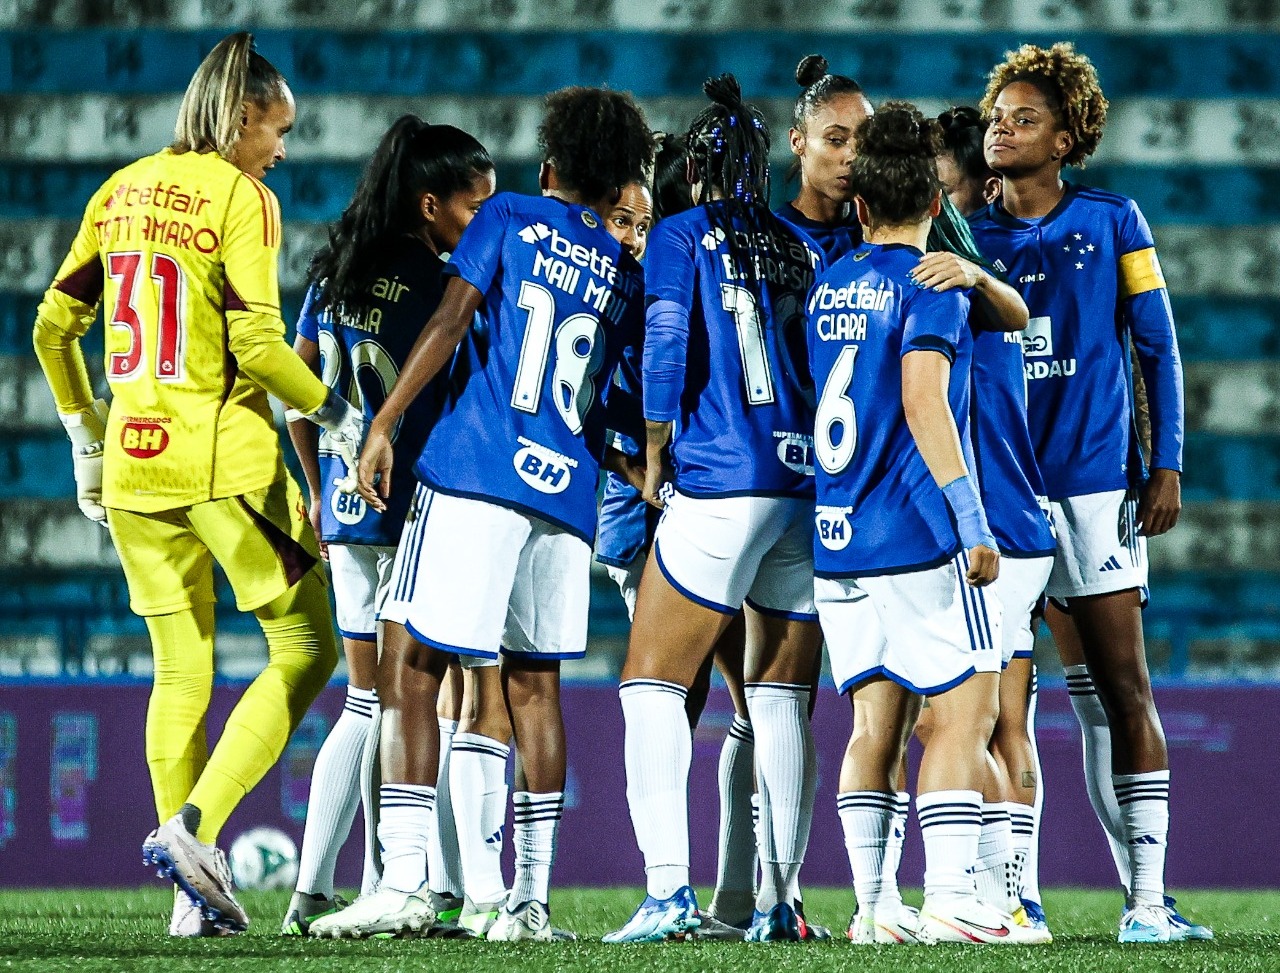 Na Ladies Cup, Cabulosas encaram jogo decisivo contra o São Paulo